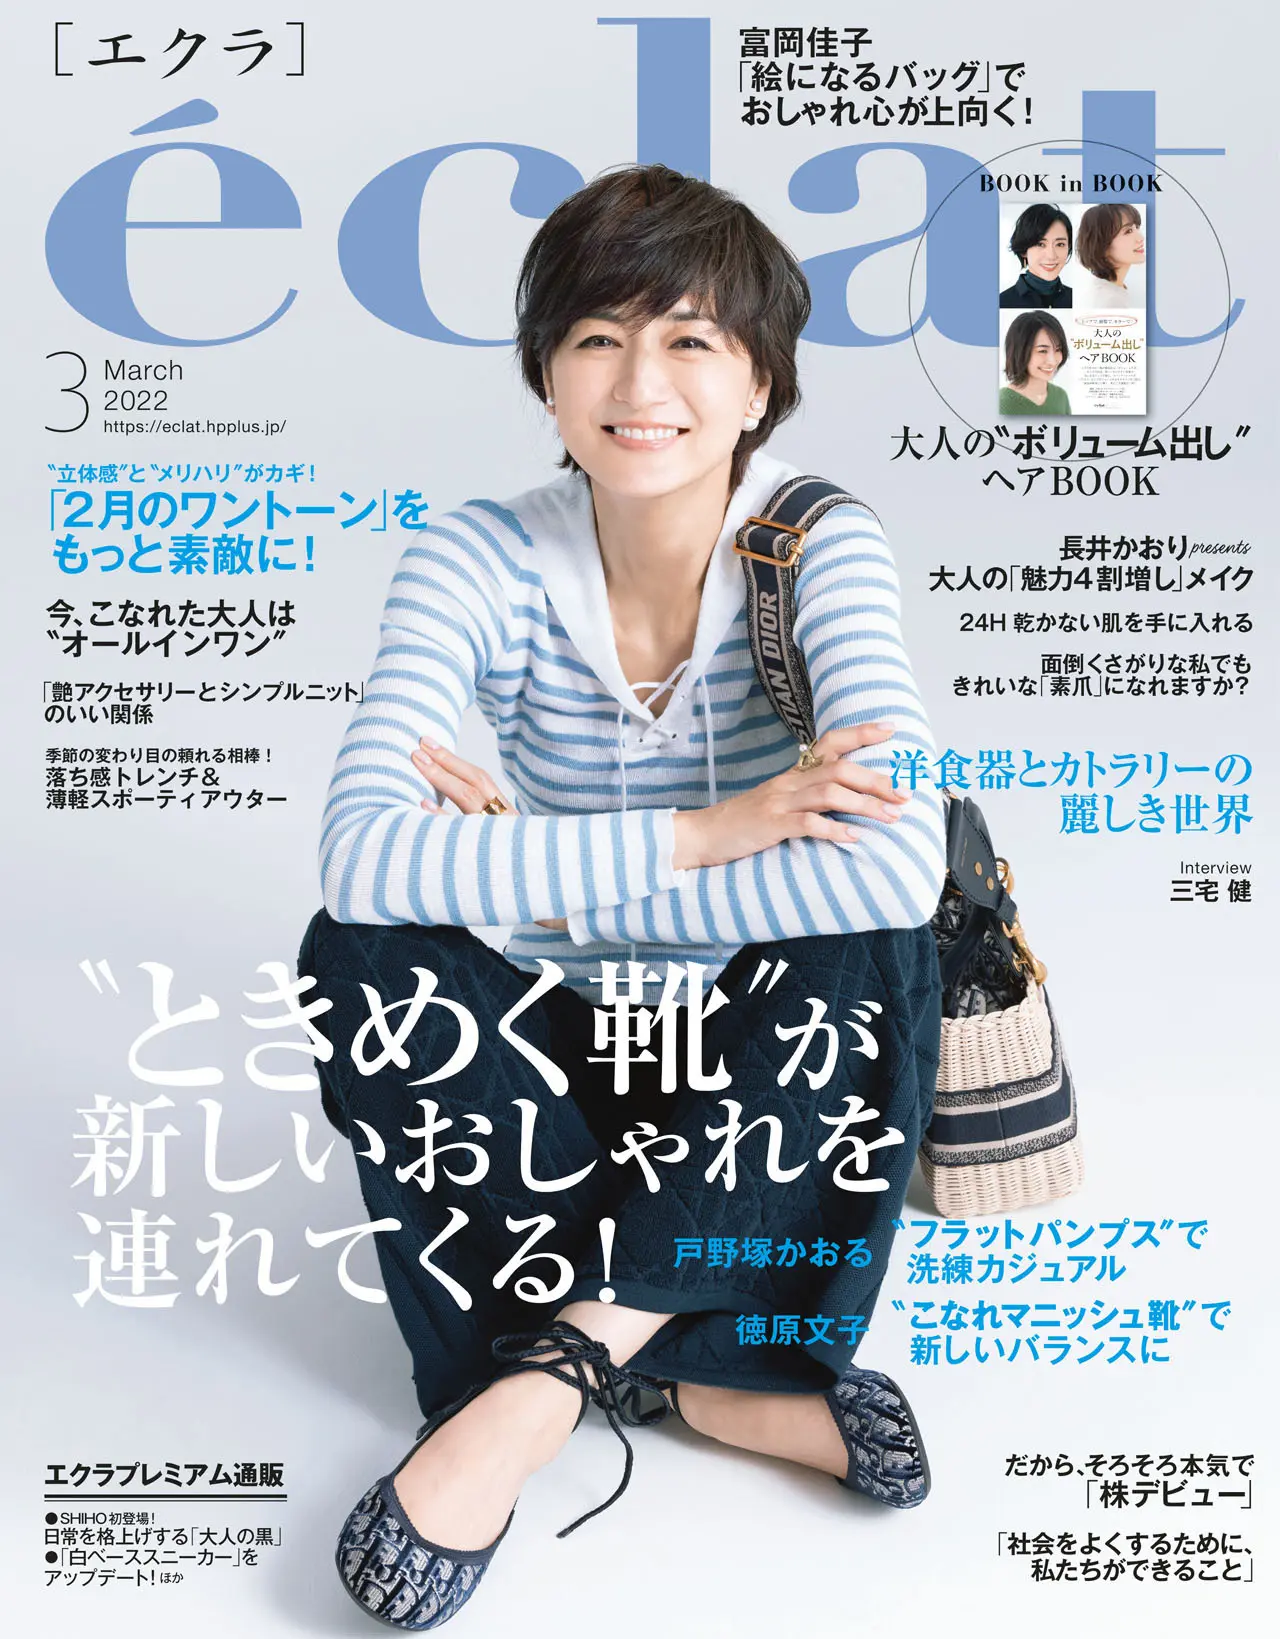 エクラ2月号表紙。カバーモデルは富岡佳子さん。